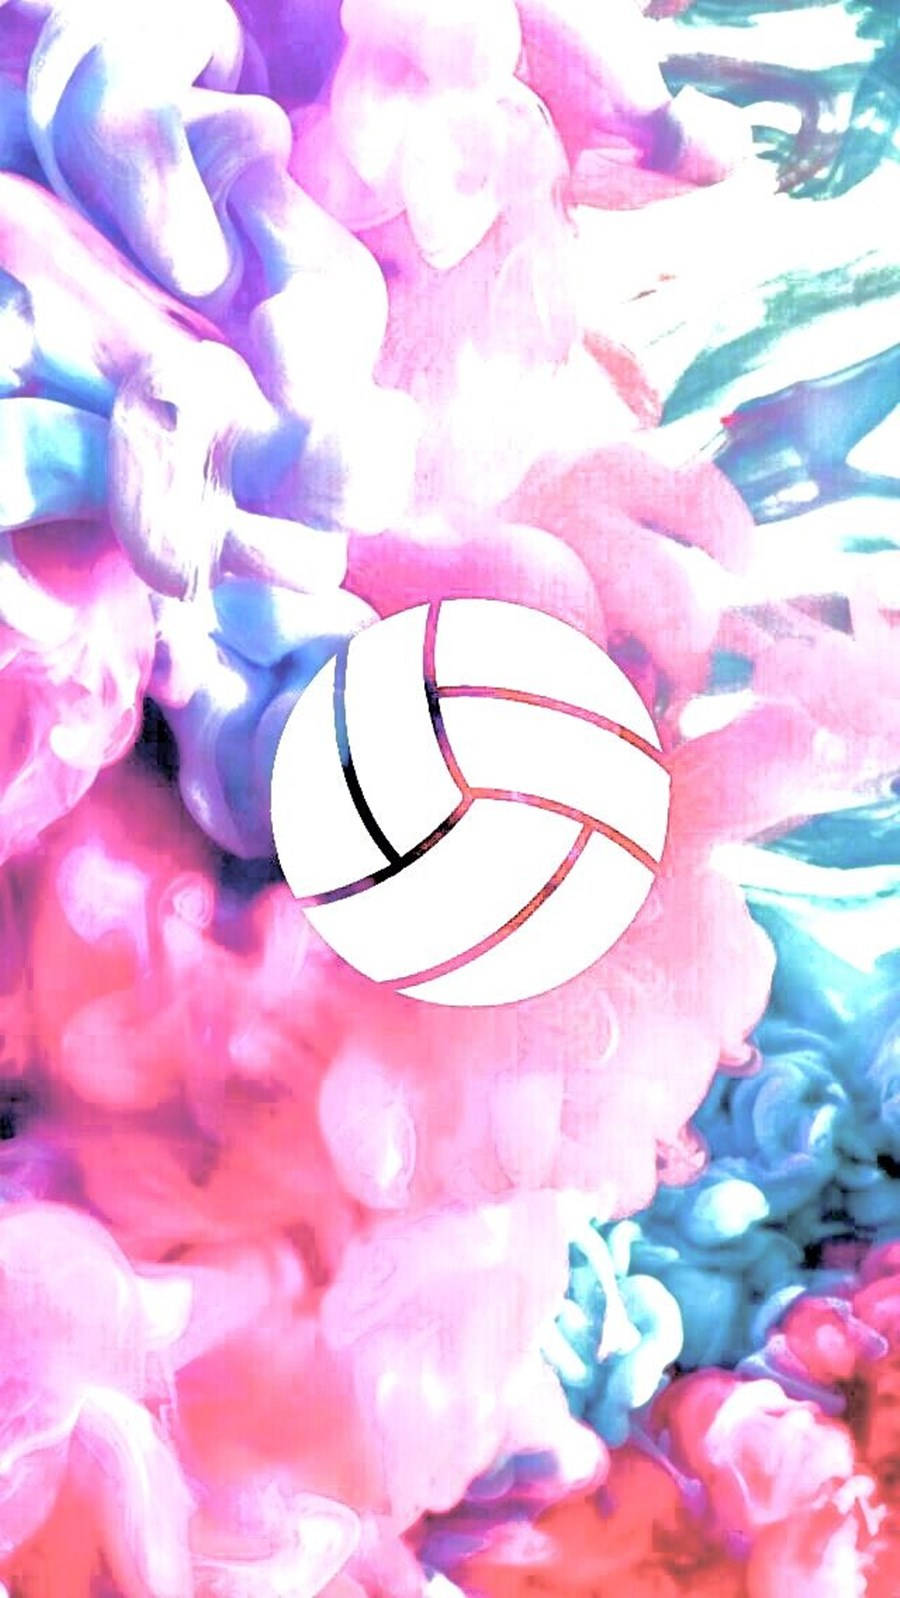 Volleybold æstetisk farvet røg baggrund. Wallpaper